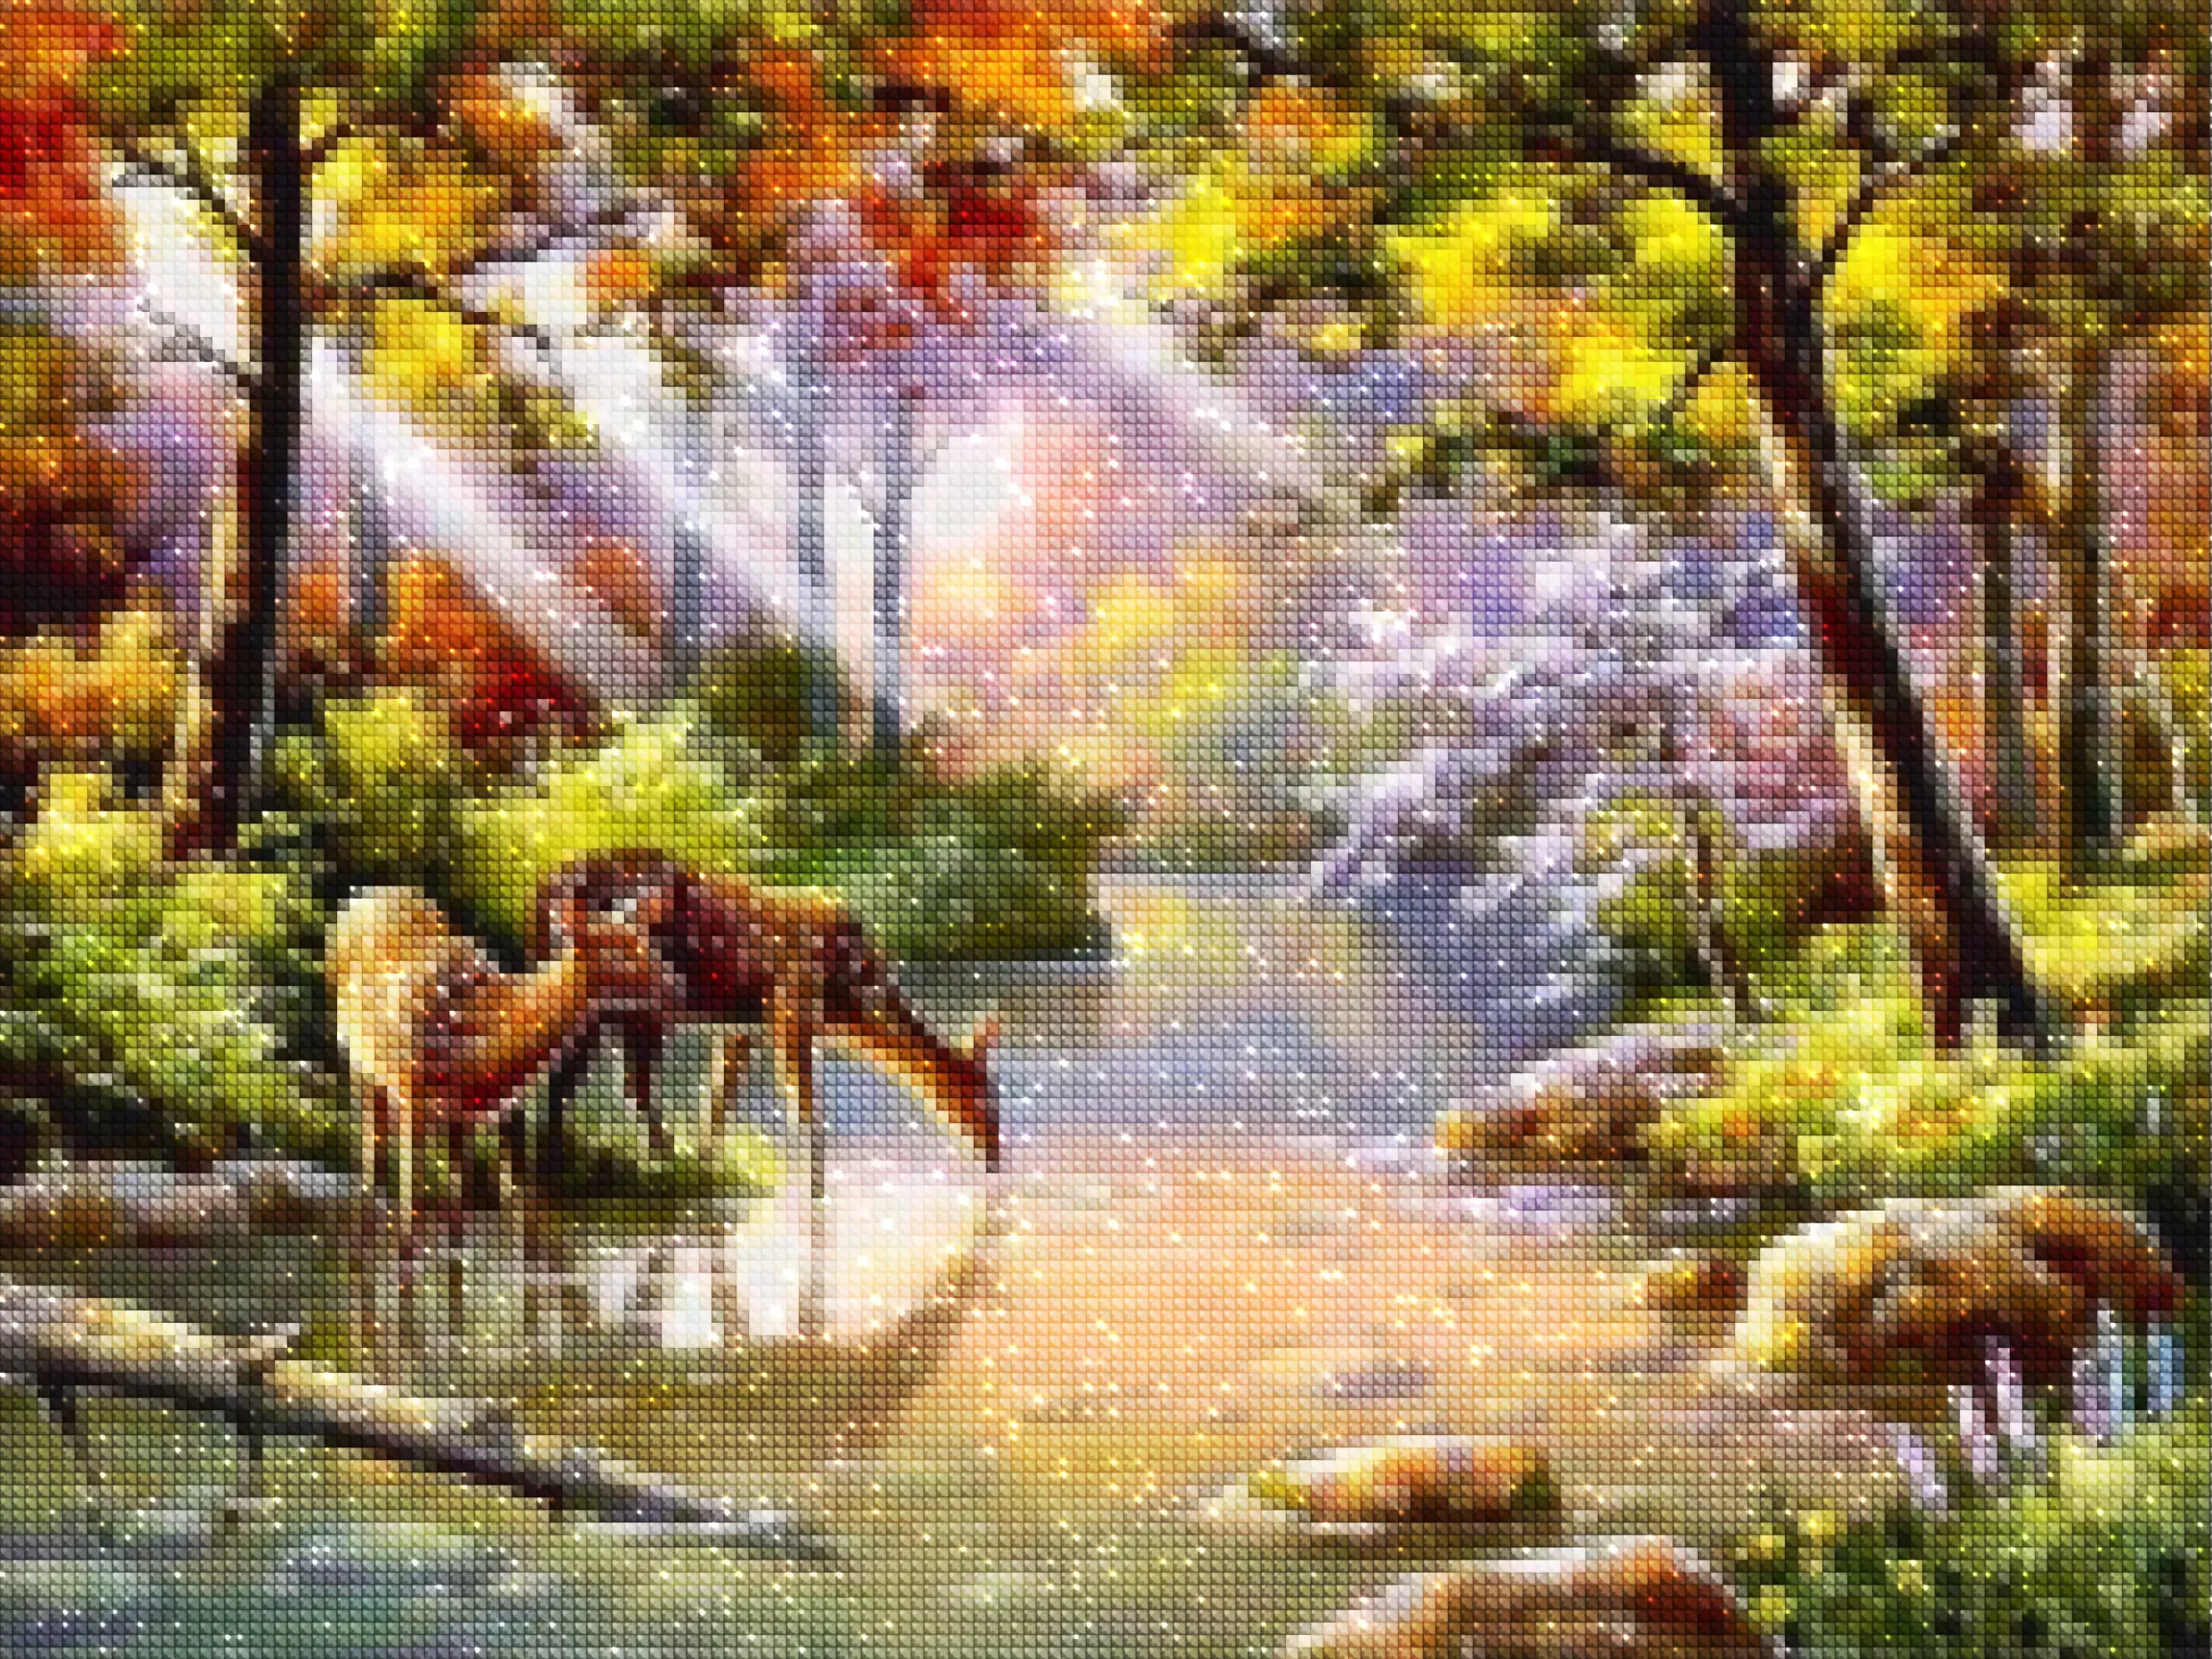 diamonds-wizard-diamond-painting-kits-Animals-Deer-Deer by the Stream-diamonds.webp